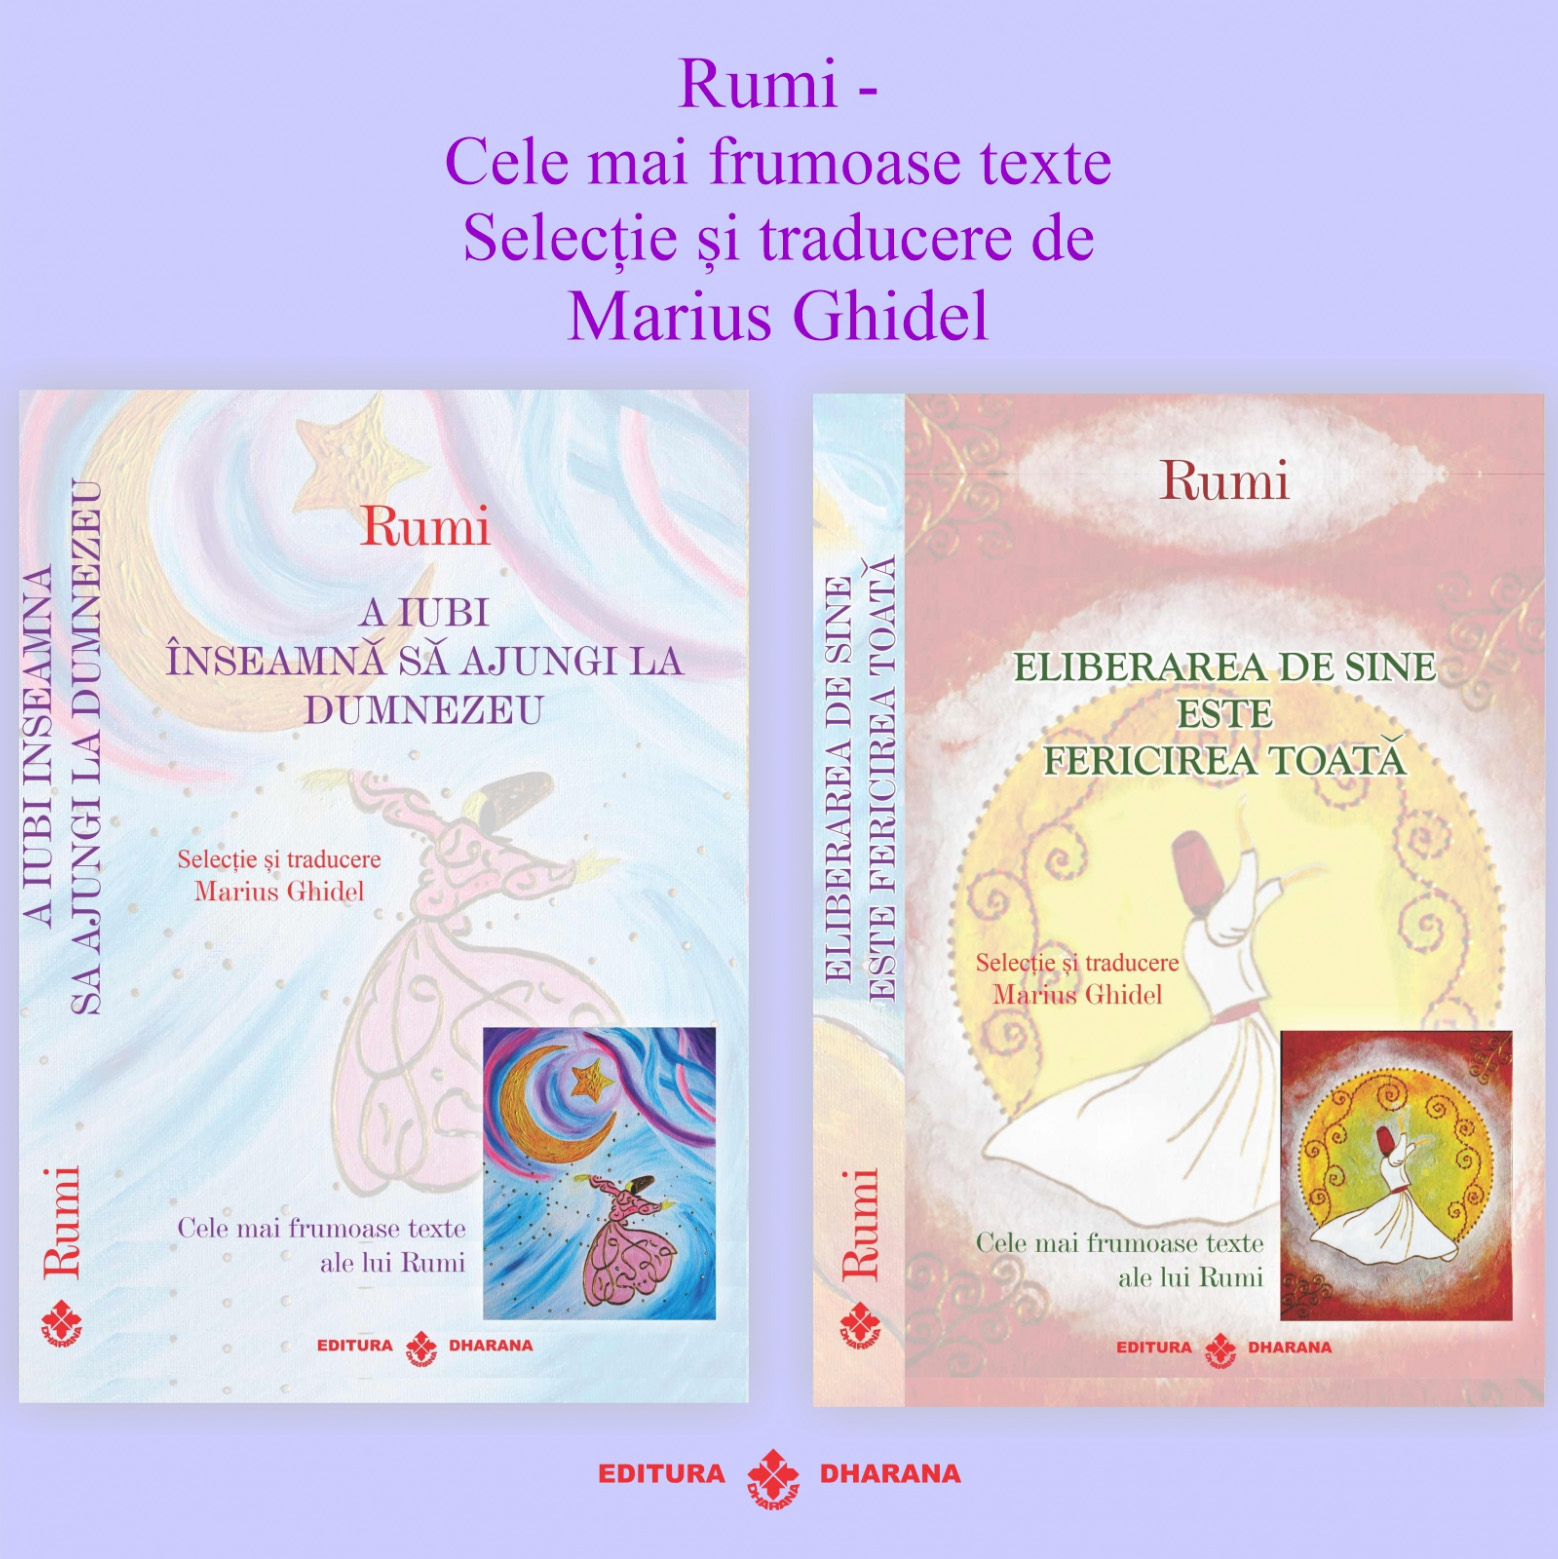 Set carti Rumi – Cele mai frumoase texte: A iubi inseamna sa ajungi la Dumnezeu / Eliberarea de sine este fericirea toata | Rumi De La Carturesti Carti Dezvoltare Personala 2023-06-10